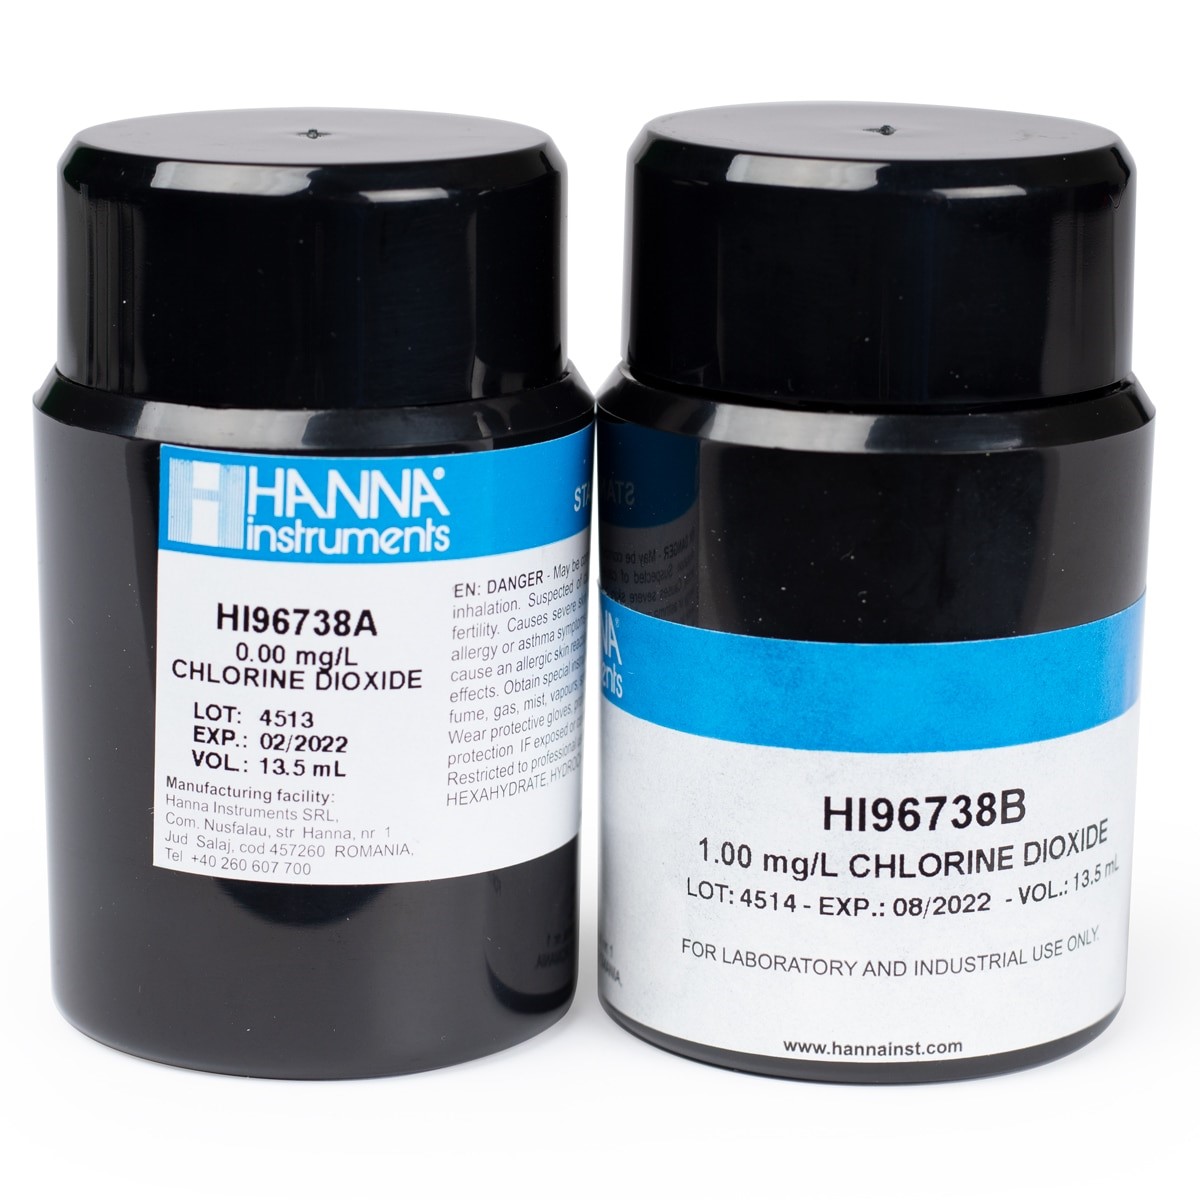 HI96738-11 Chlorine Dioxide CAL Check™ Standards